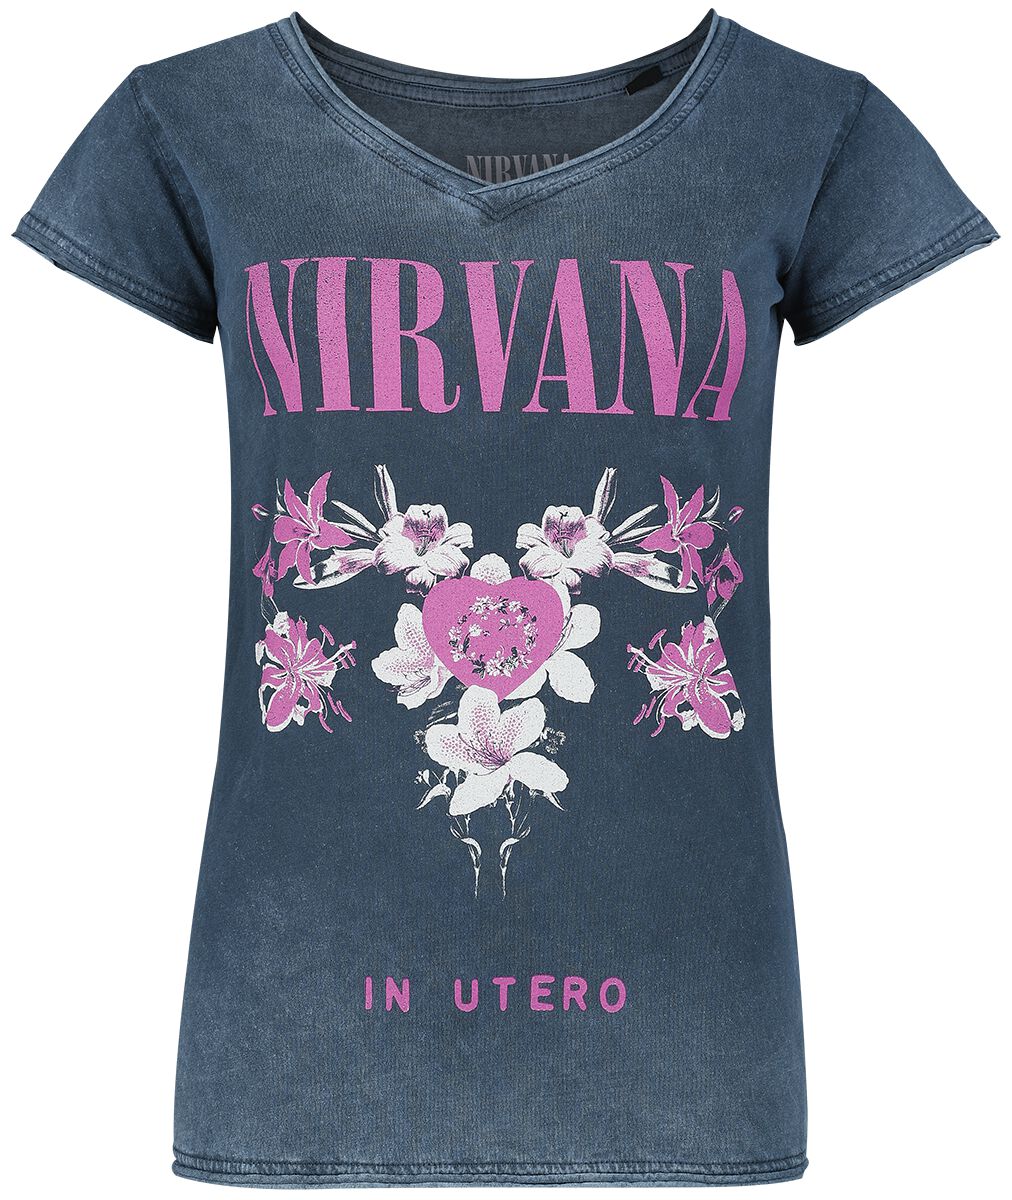 T-Shirt Manches courtes de Nirvana - Flowers - S à XXL - pour Femme - marine